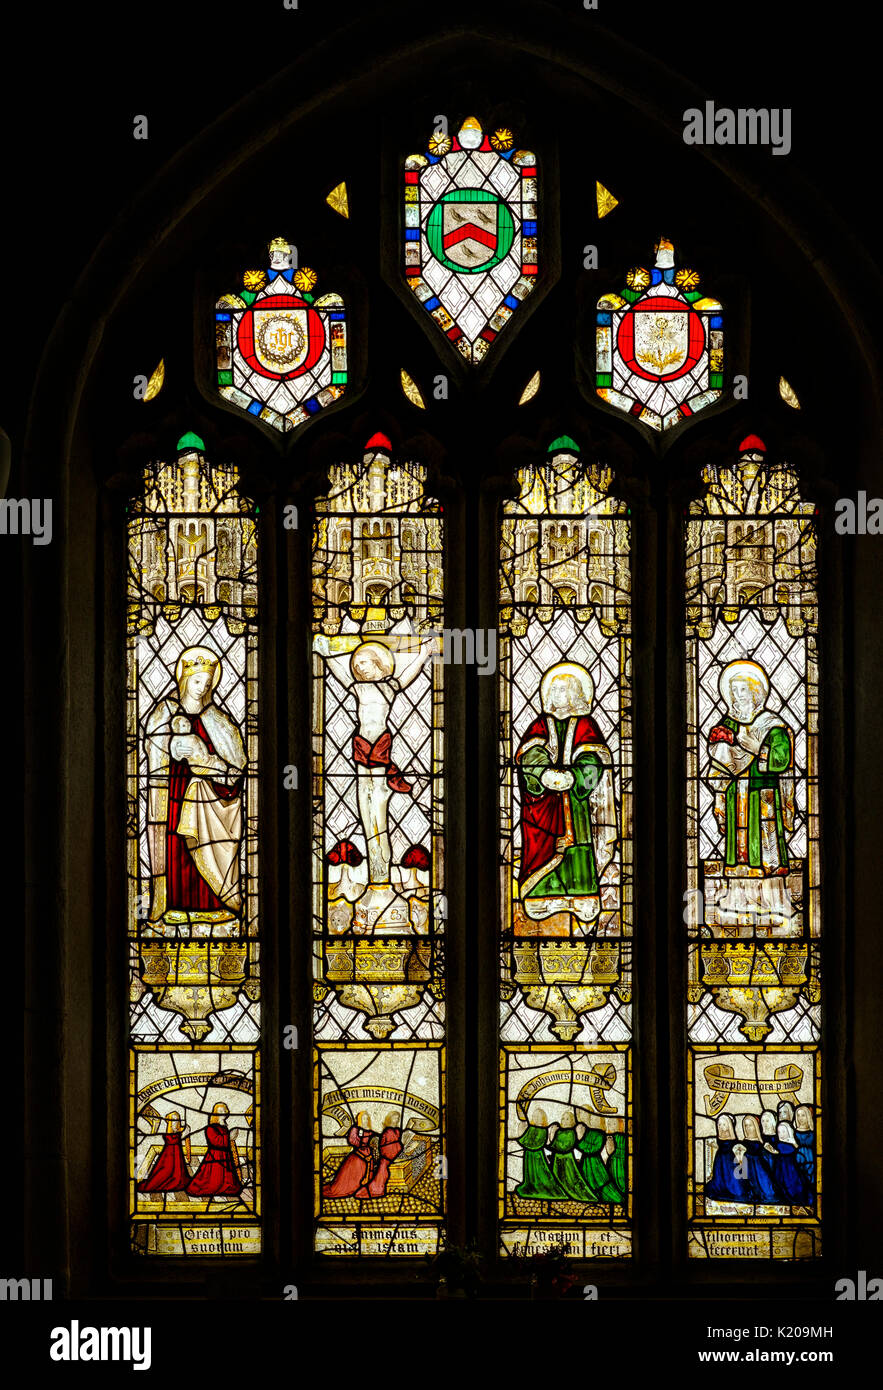 La fenêtre de verre dans l'église paroissiale, Saint Neot, Bodmin Moor, Cornwall, Angleterre, Royaume-Uni Banque D'Images